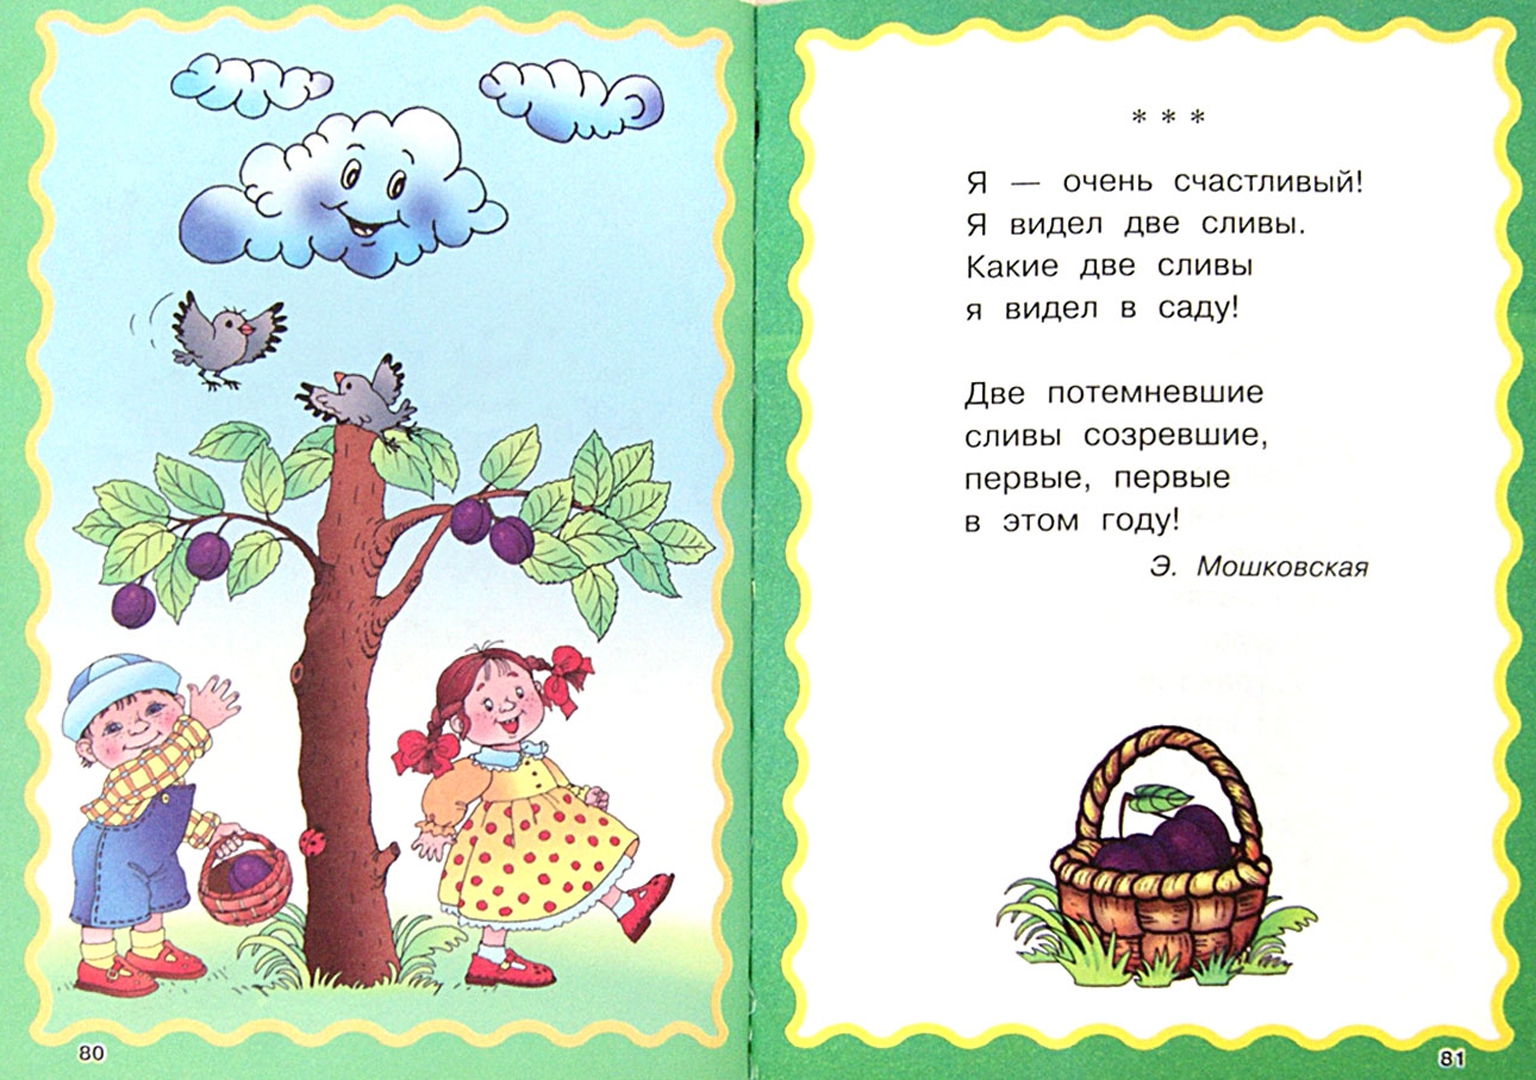 Иллюстрация 1 из 14 для 100 стихов для чтения дома и в детском саду | Лабиринт - книги. Источник: Лабиринт